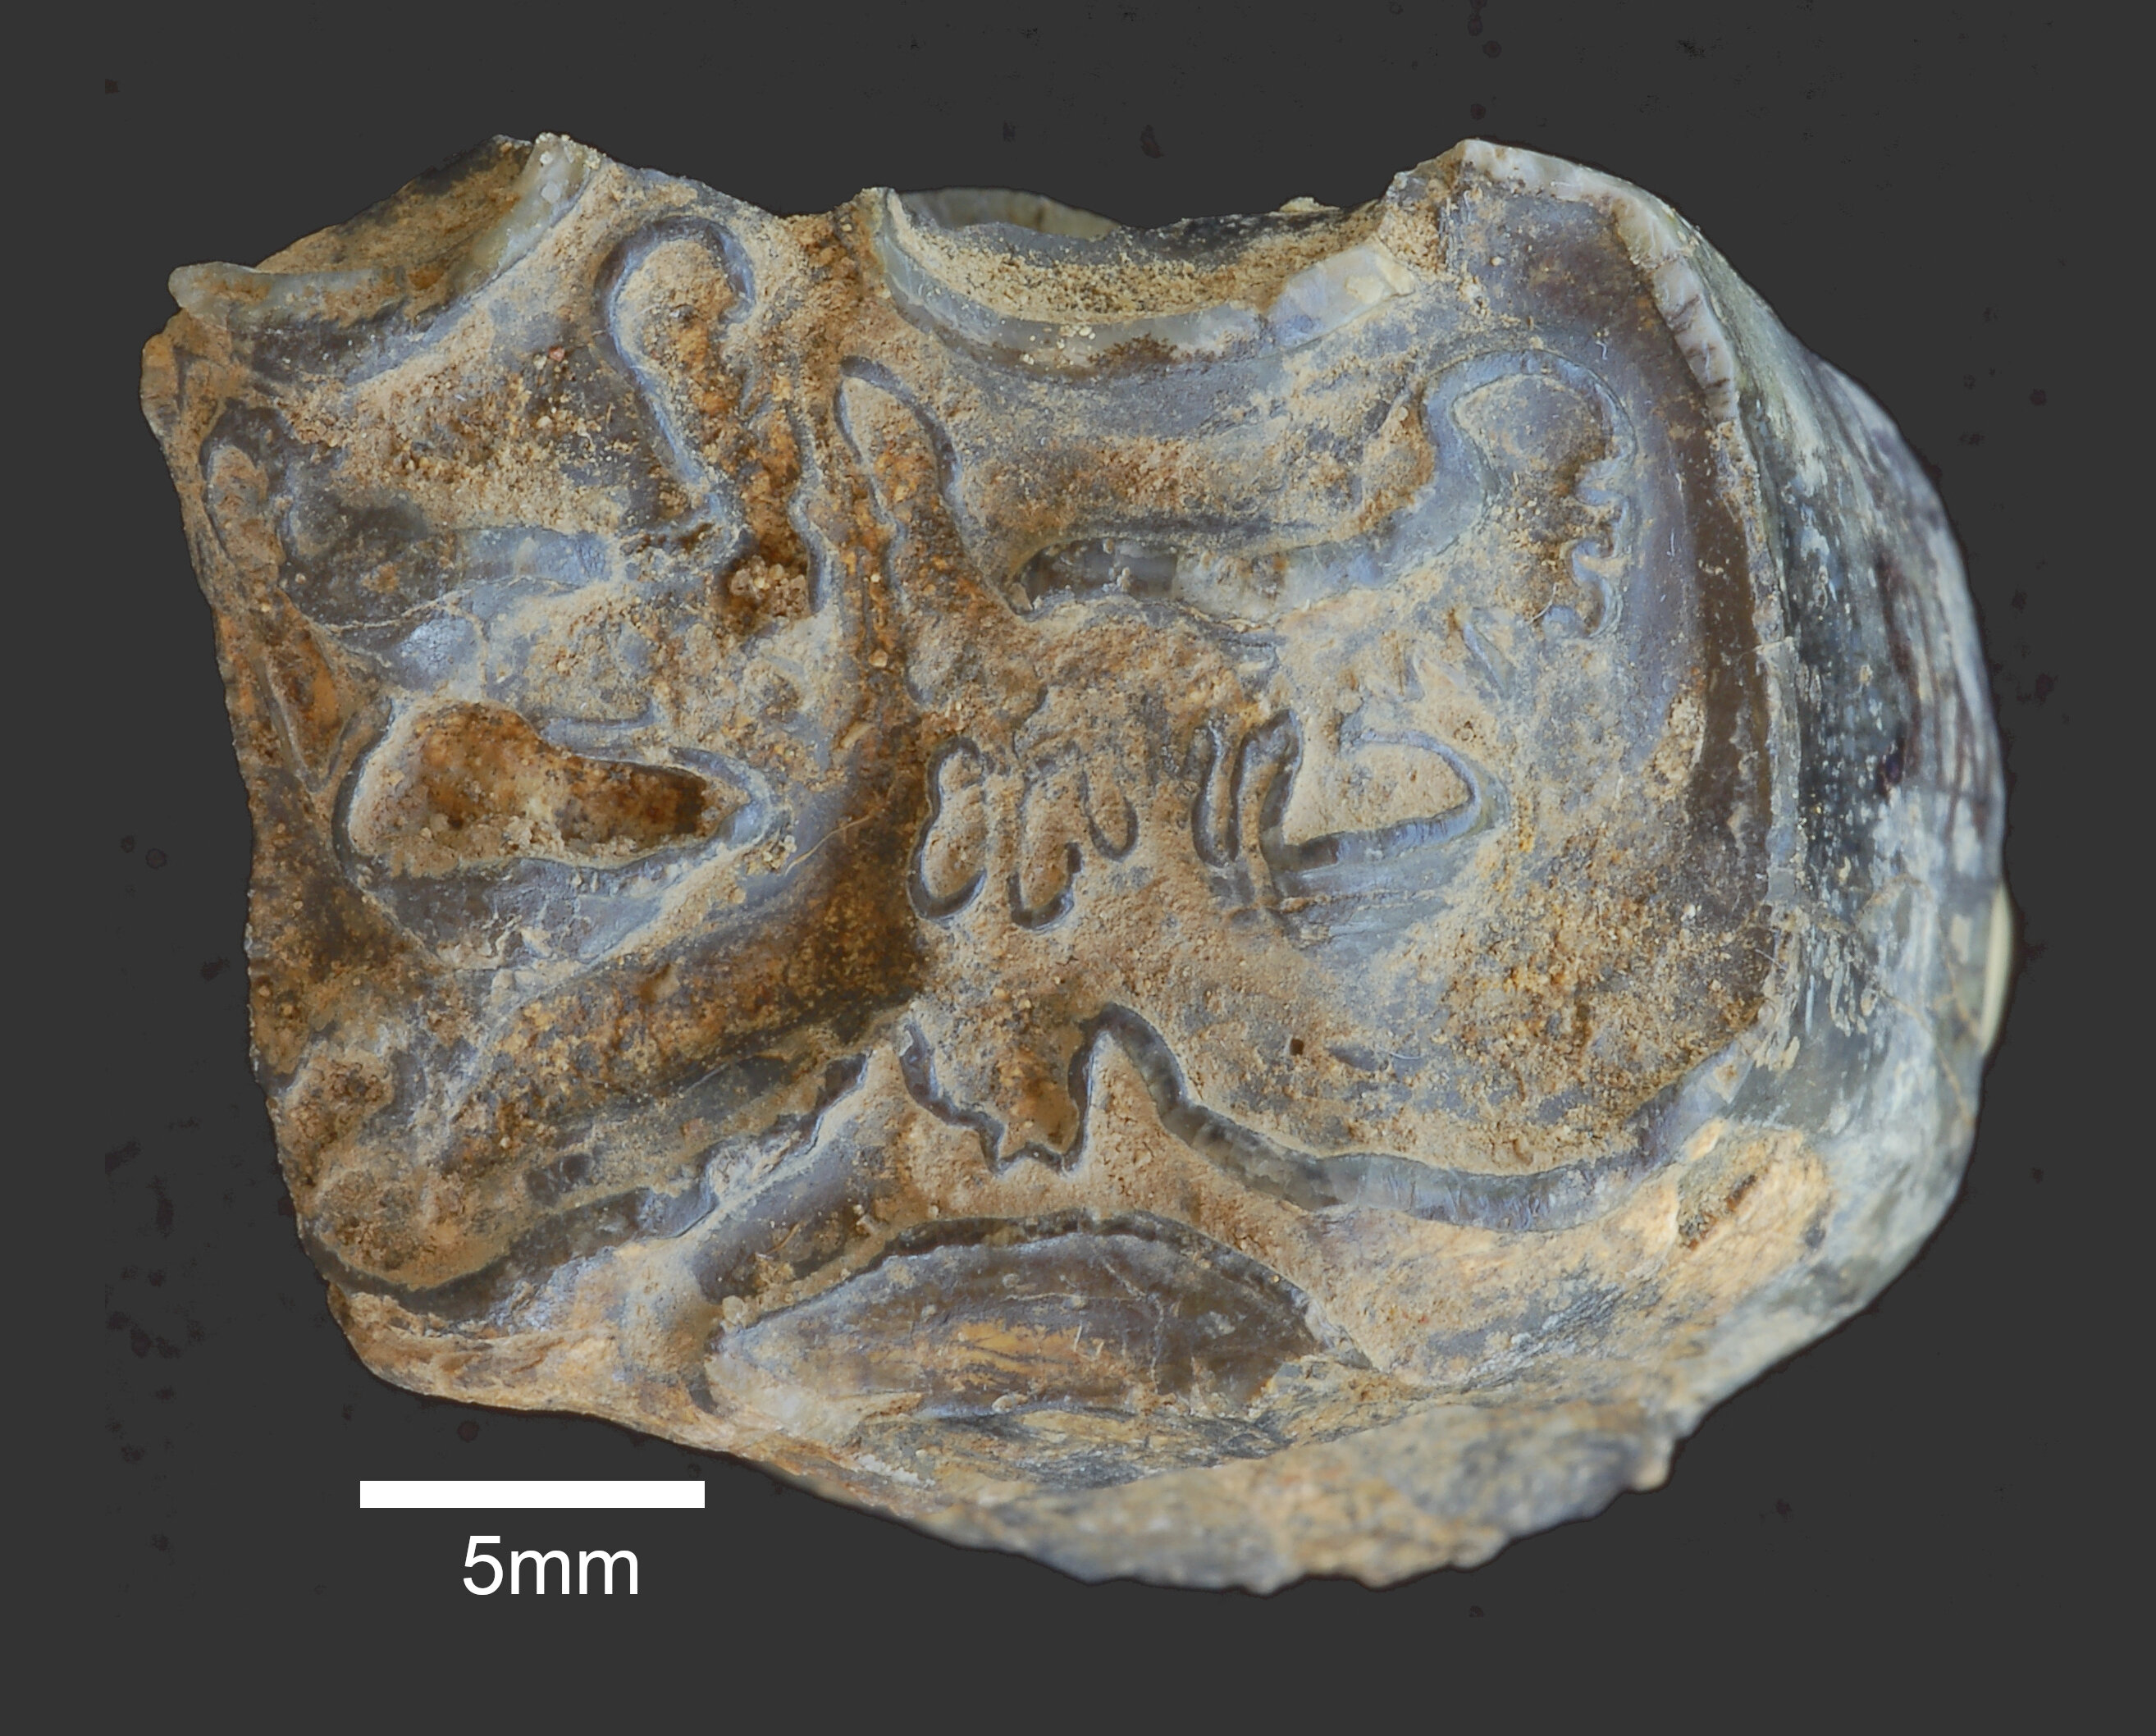 肯尼亚石器时代的发现加深了谁制造了早期工具的谜团